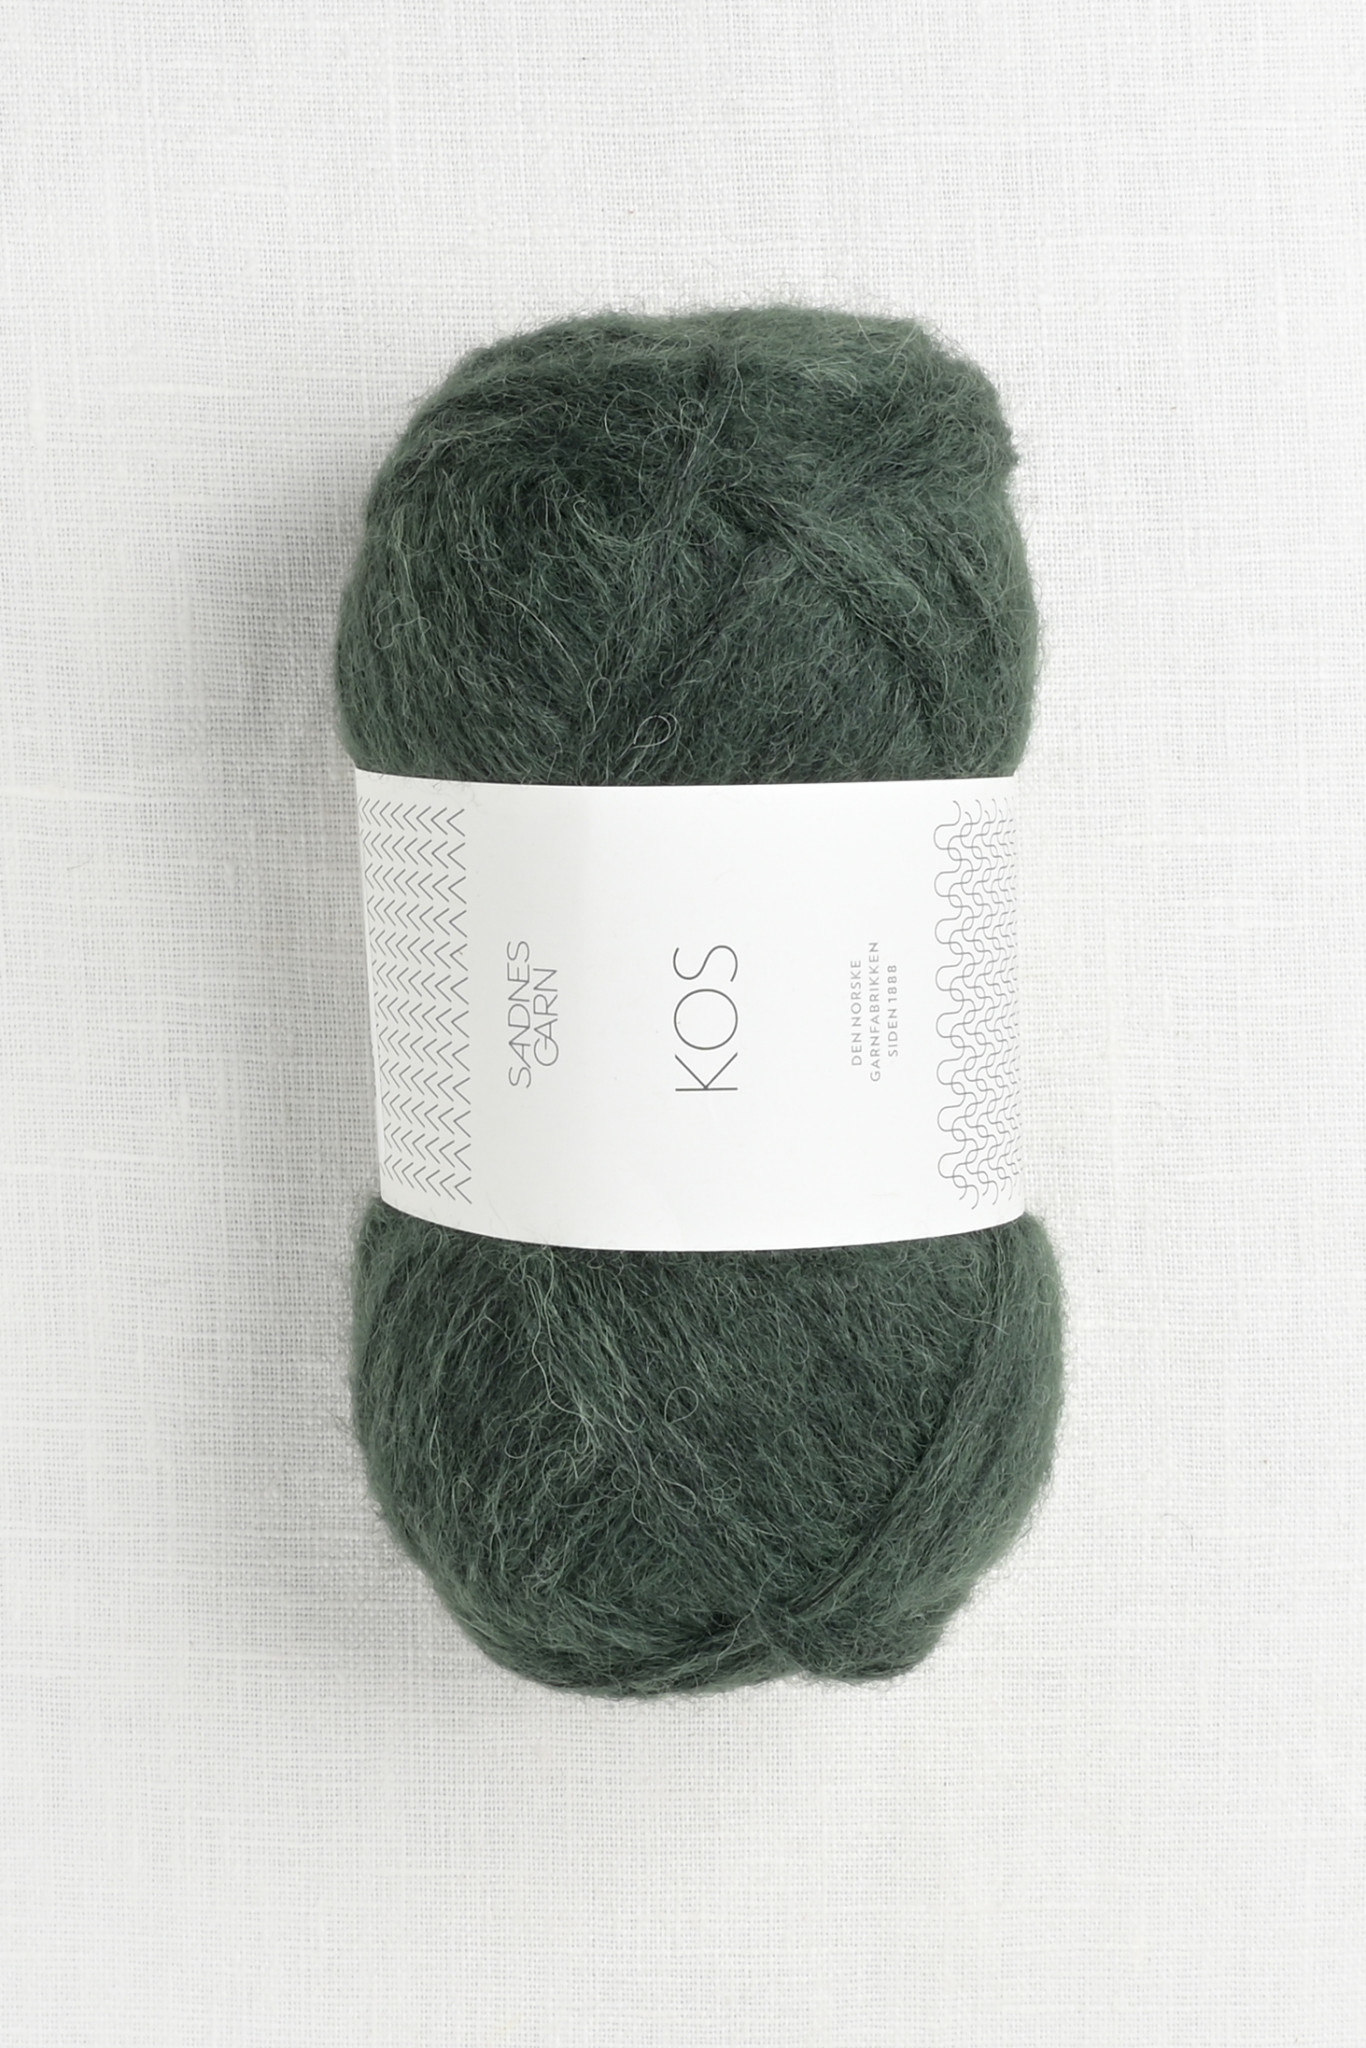 Garn KOS 8581 Deep Forest Wool Company Yarn